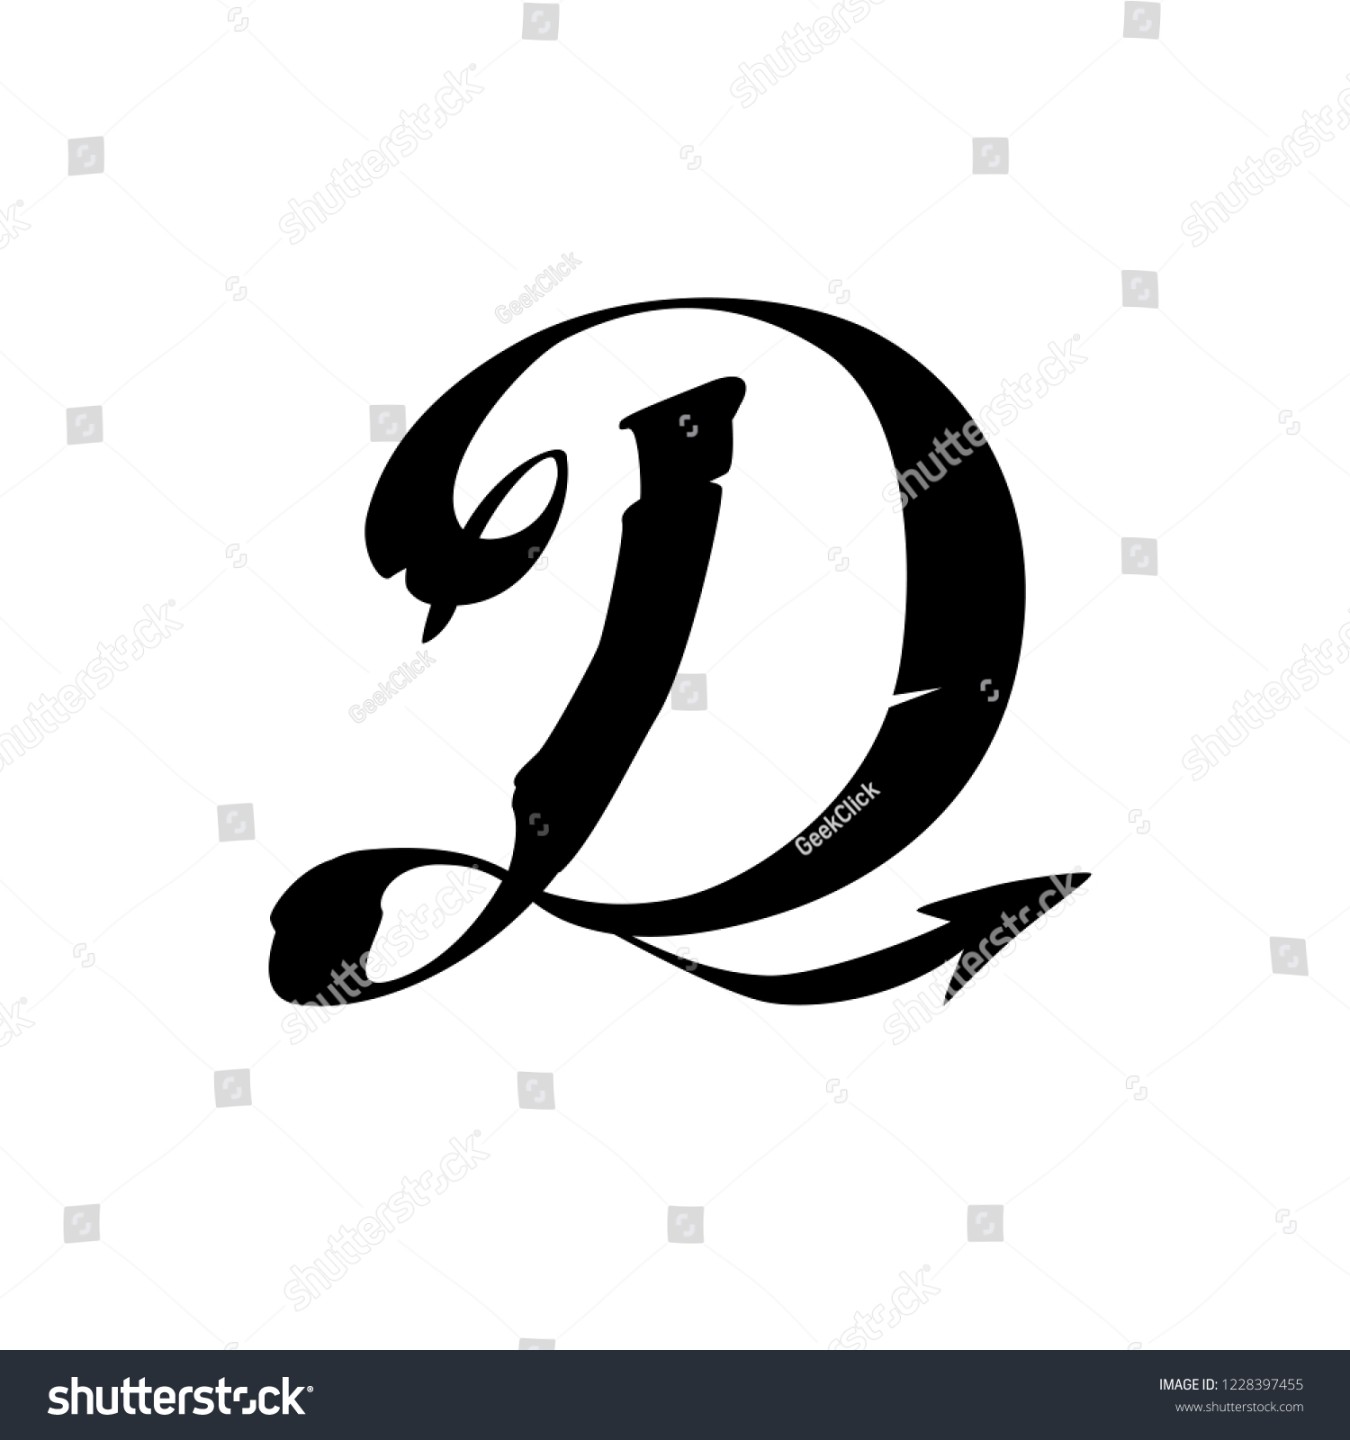 Der Buchstabe D im gotischen Stil